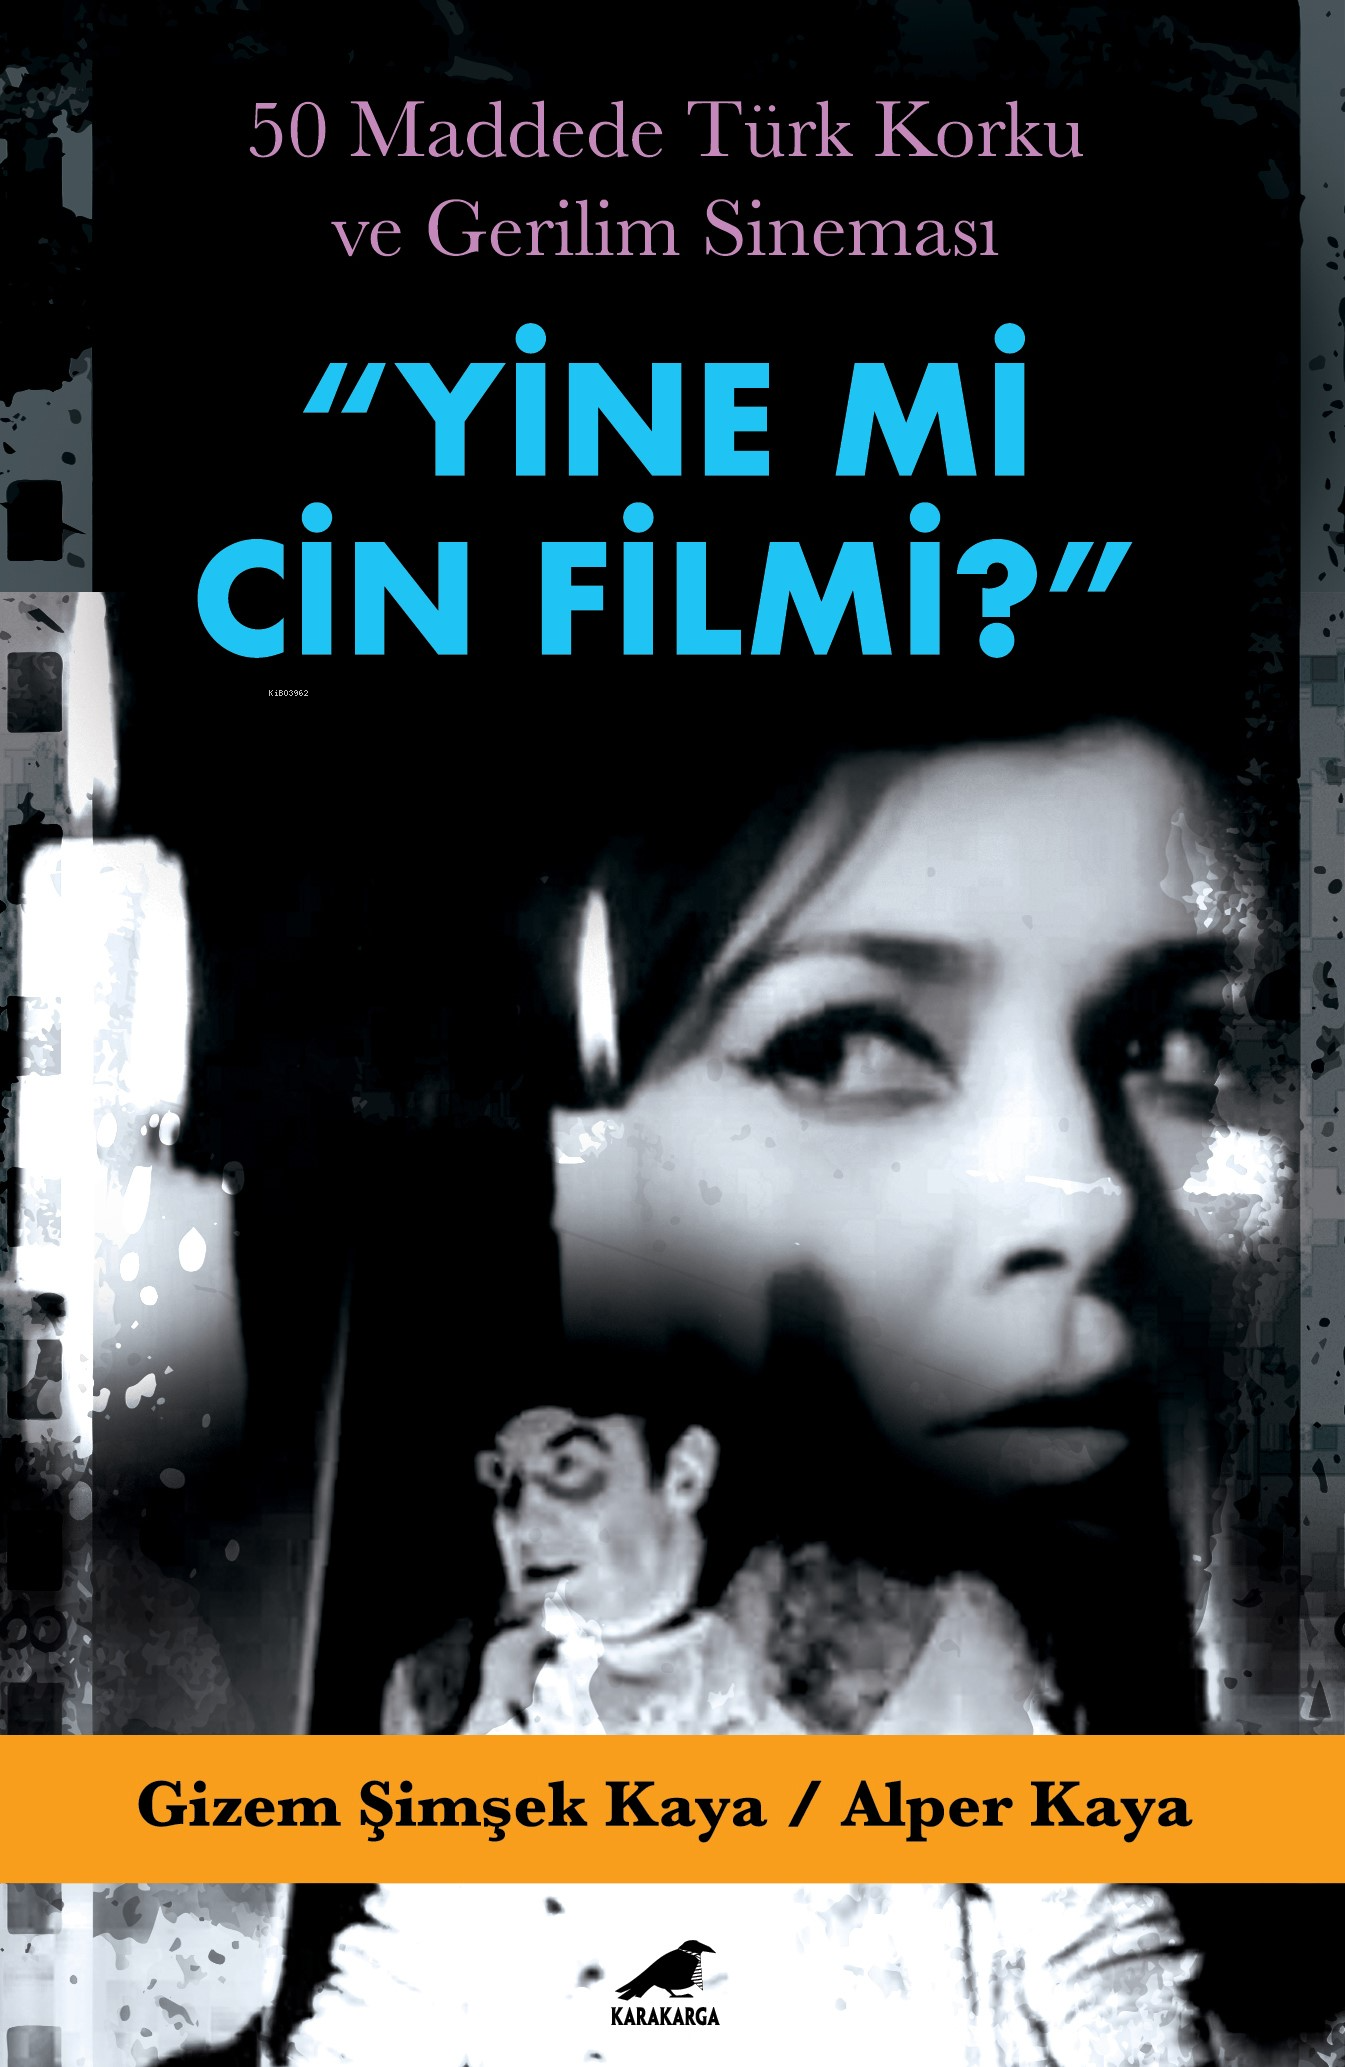 Yine mi Cin Filmi?;50 Maddede Türk Korku ve Gerilim Sineması